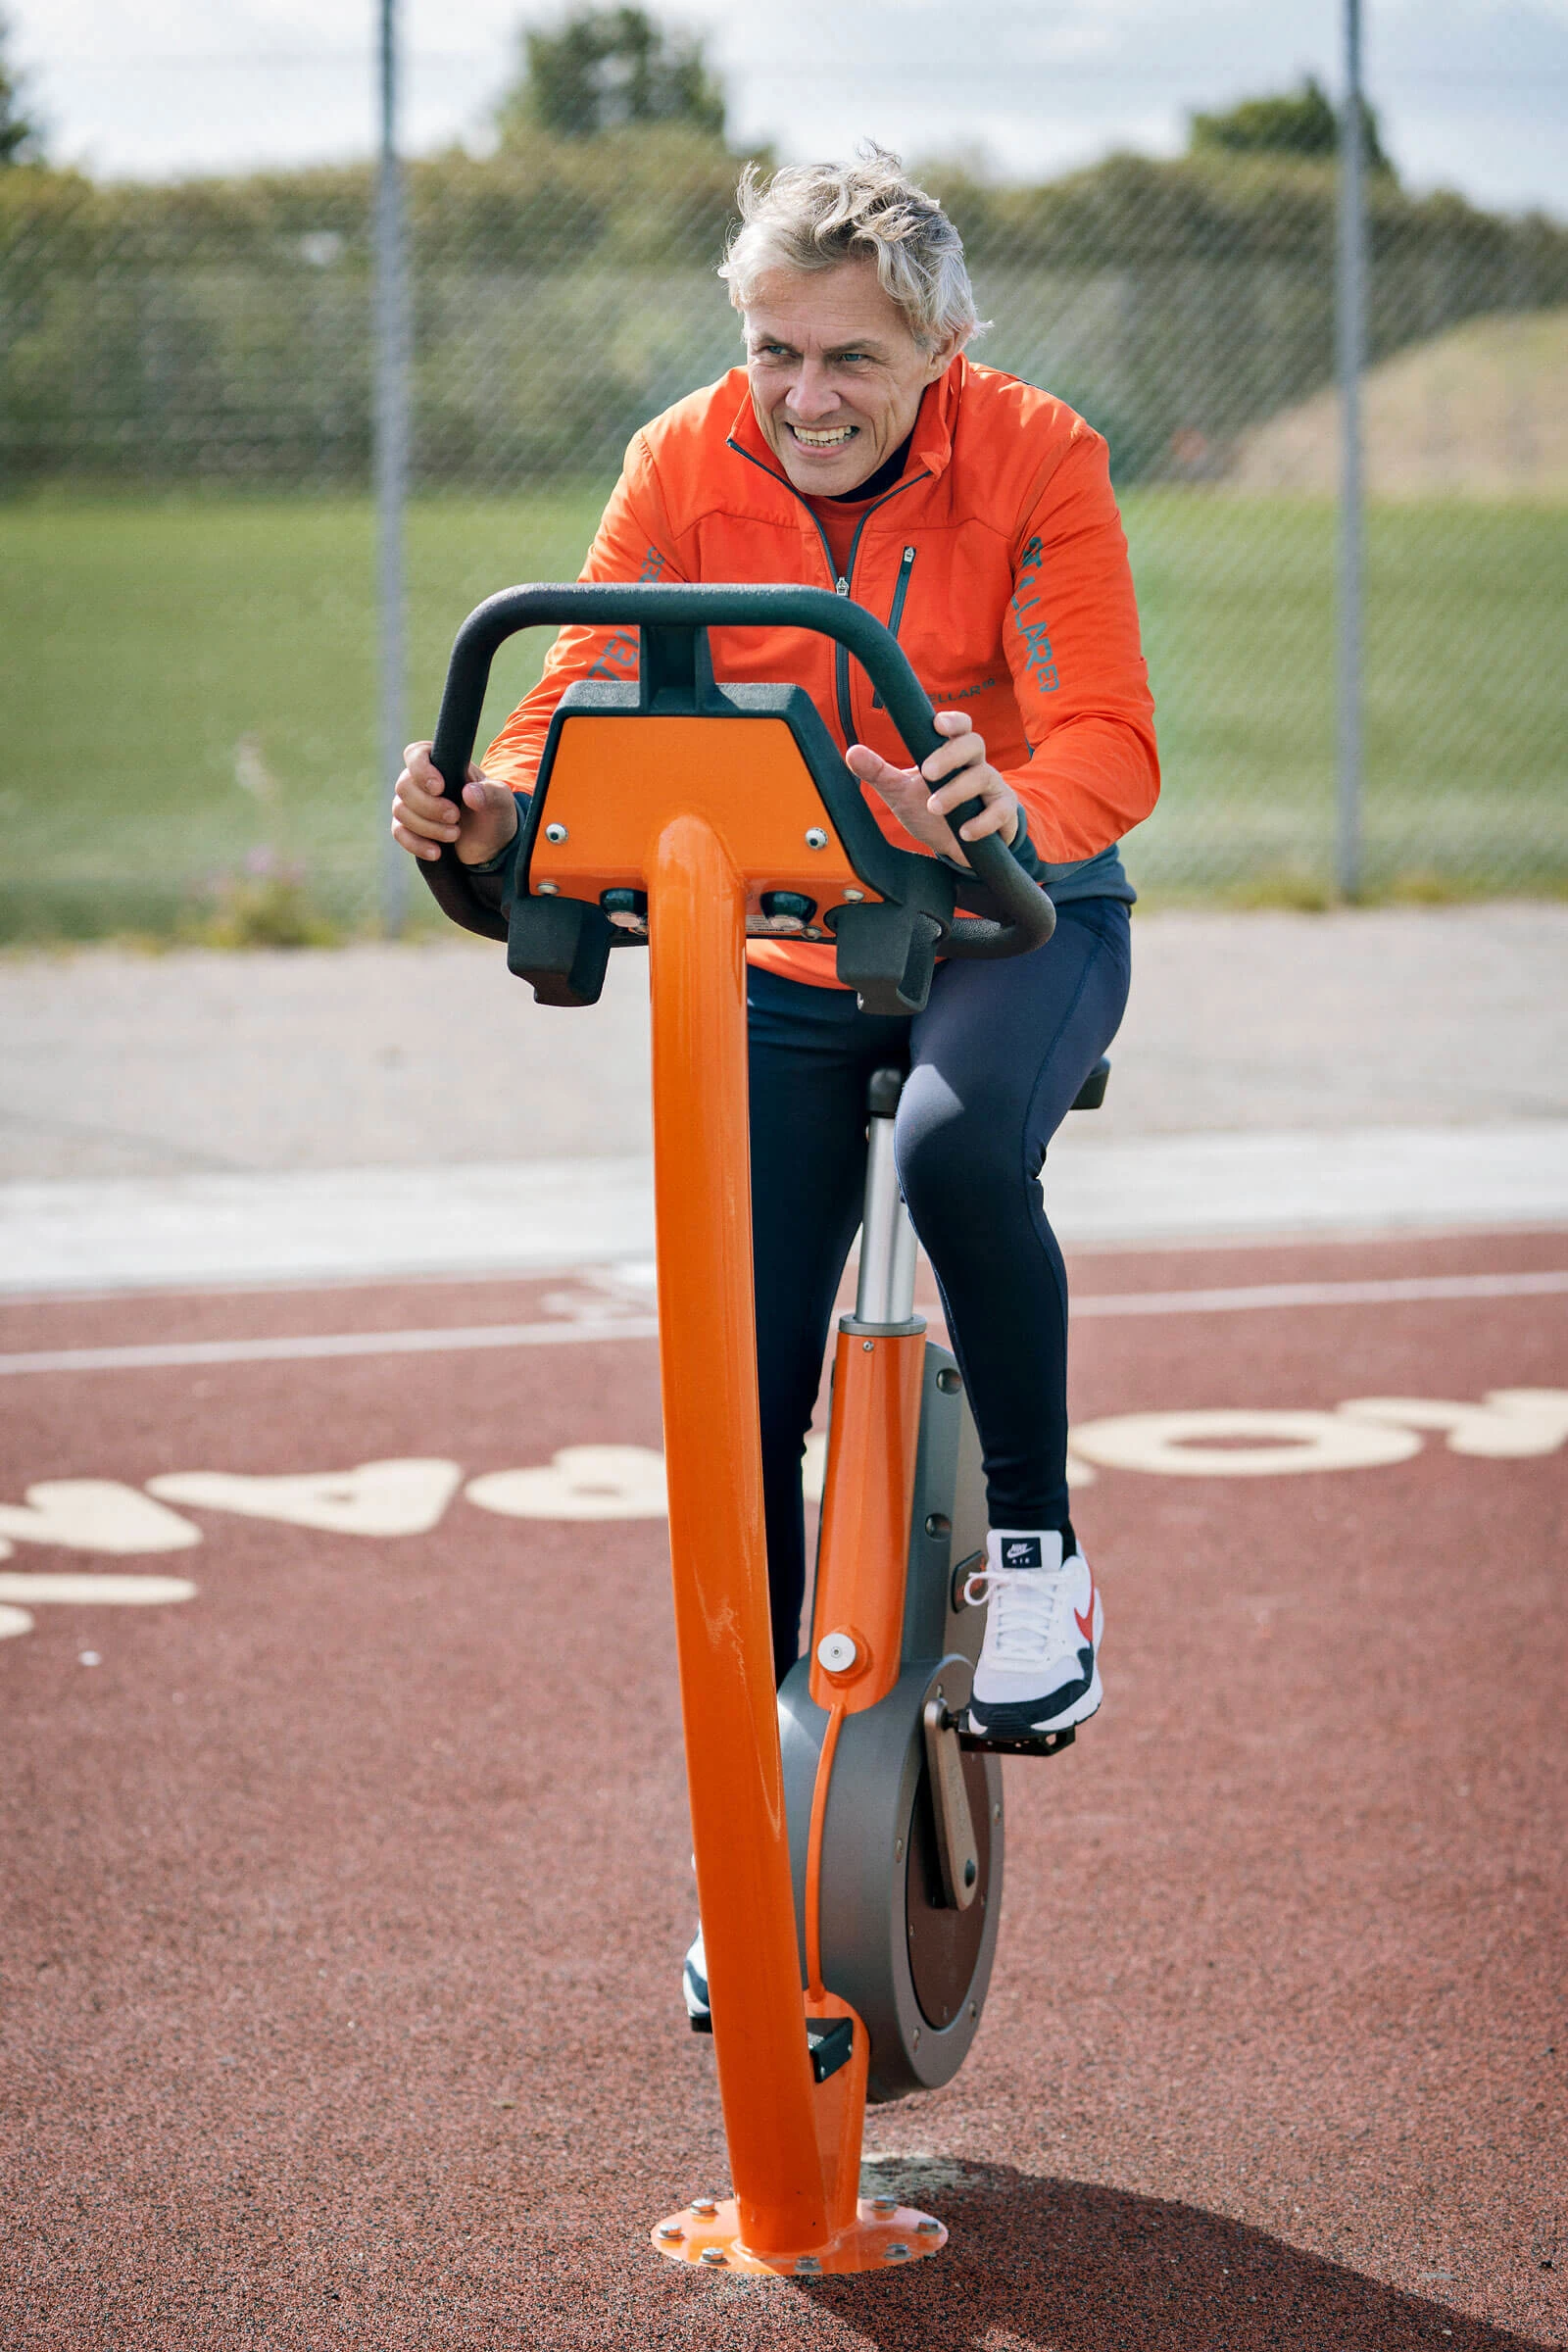 en äldre man som tränar på en stationär motionscykel utomhus